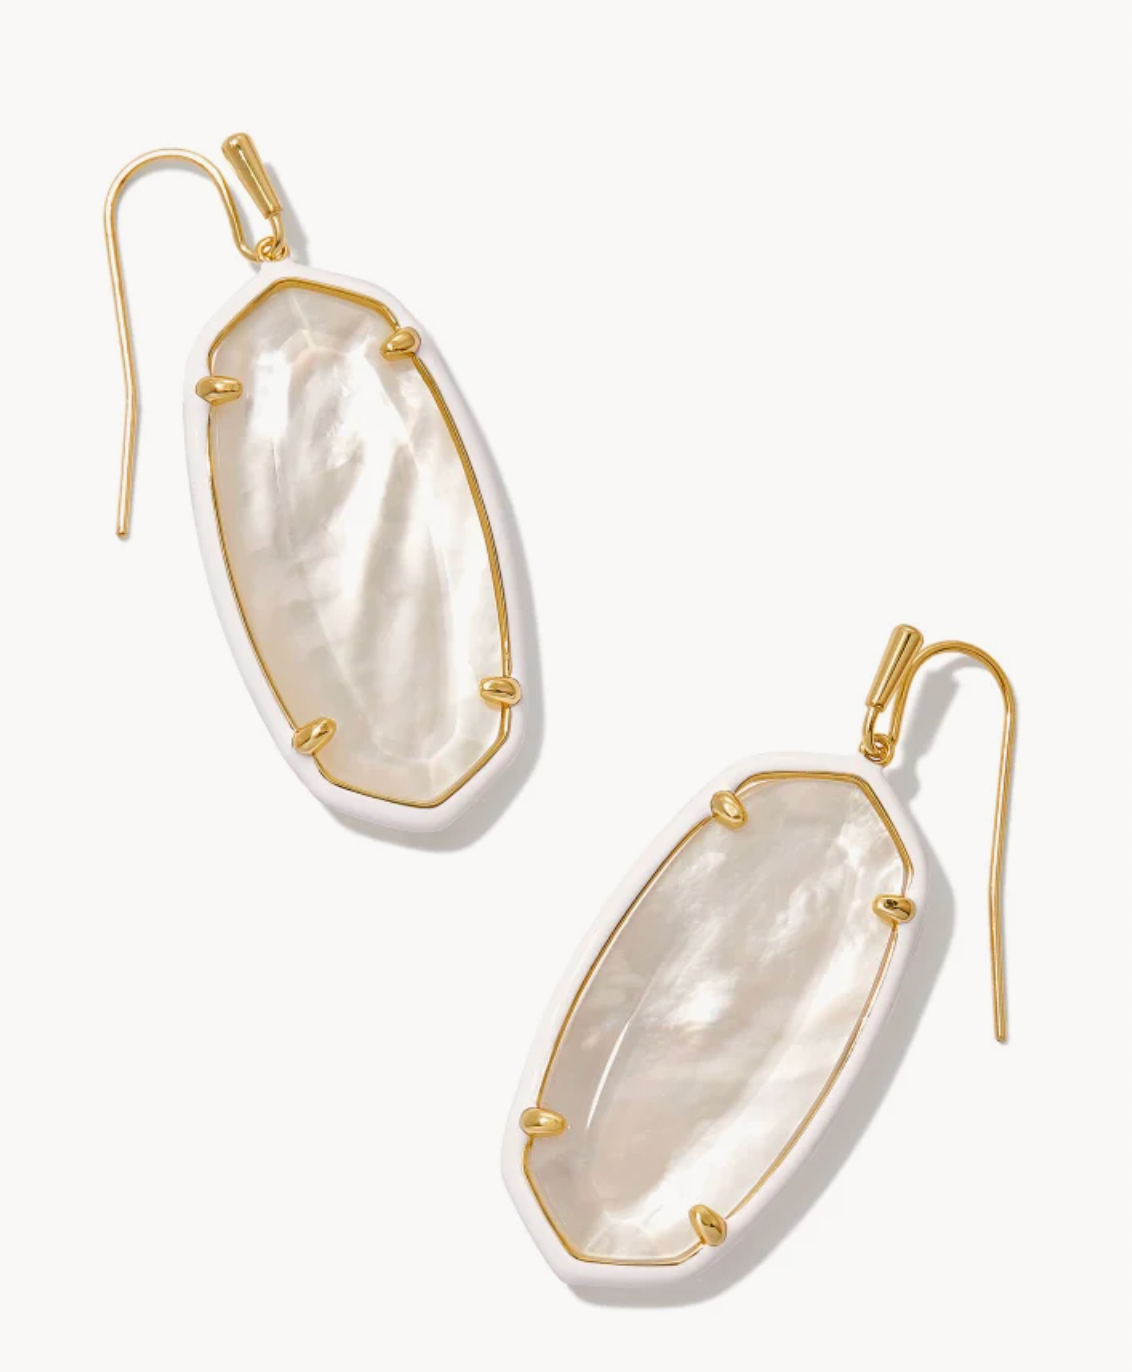 Kendra Scott Elle Gold Drop Earrings in Ivory